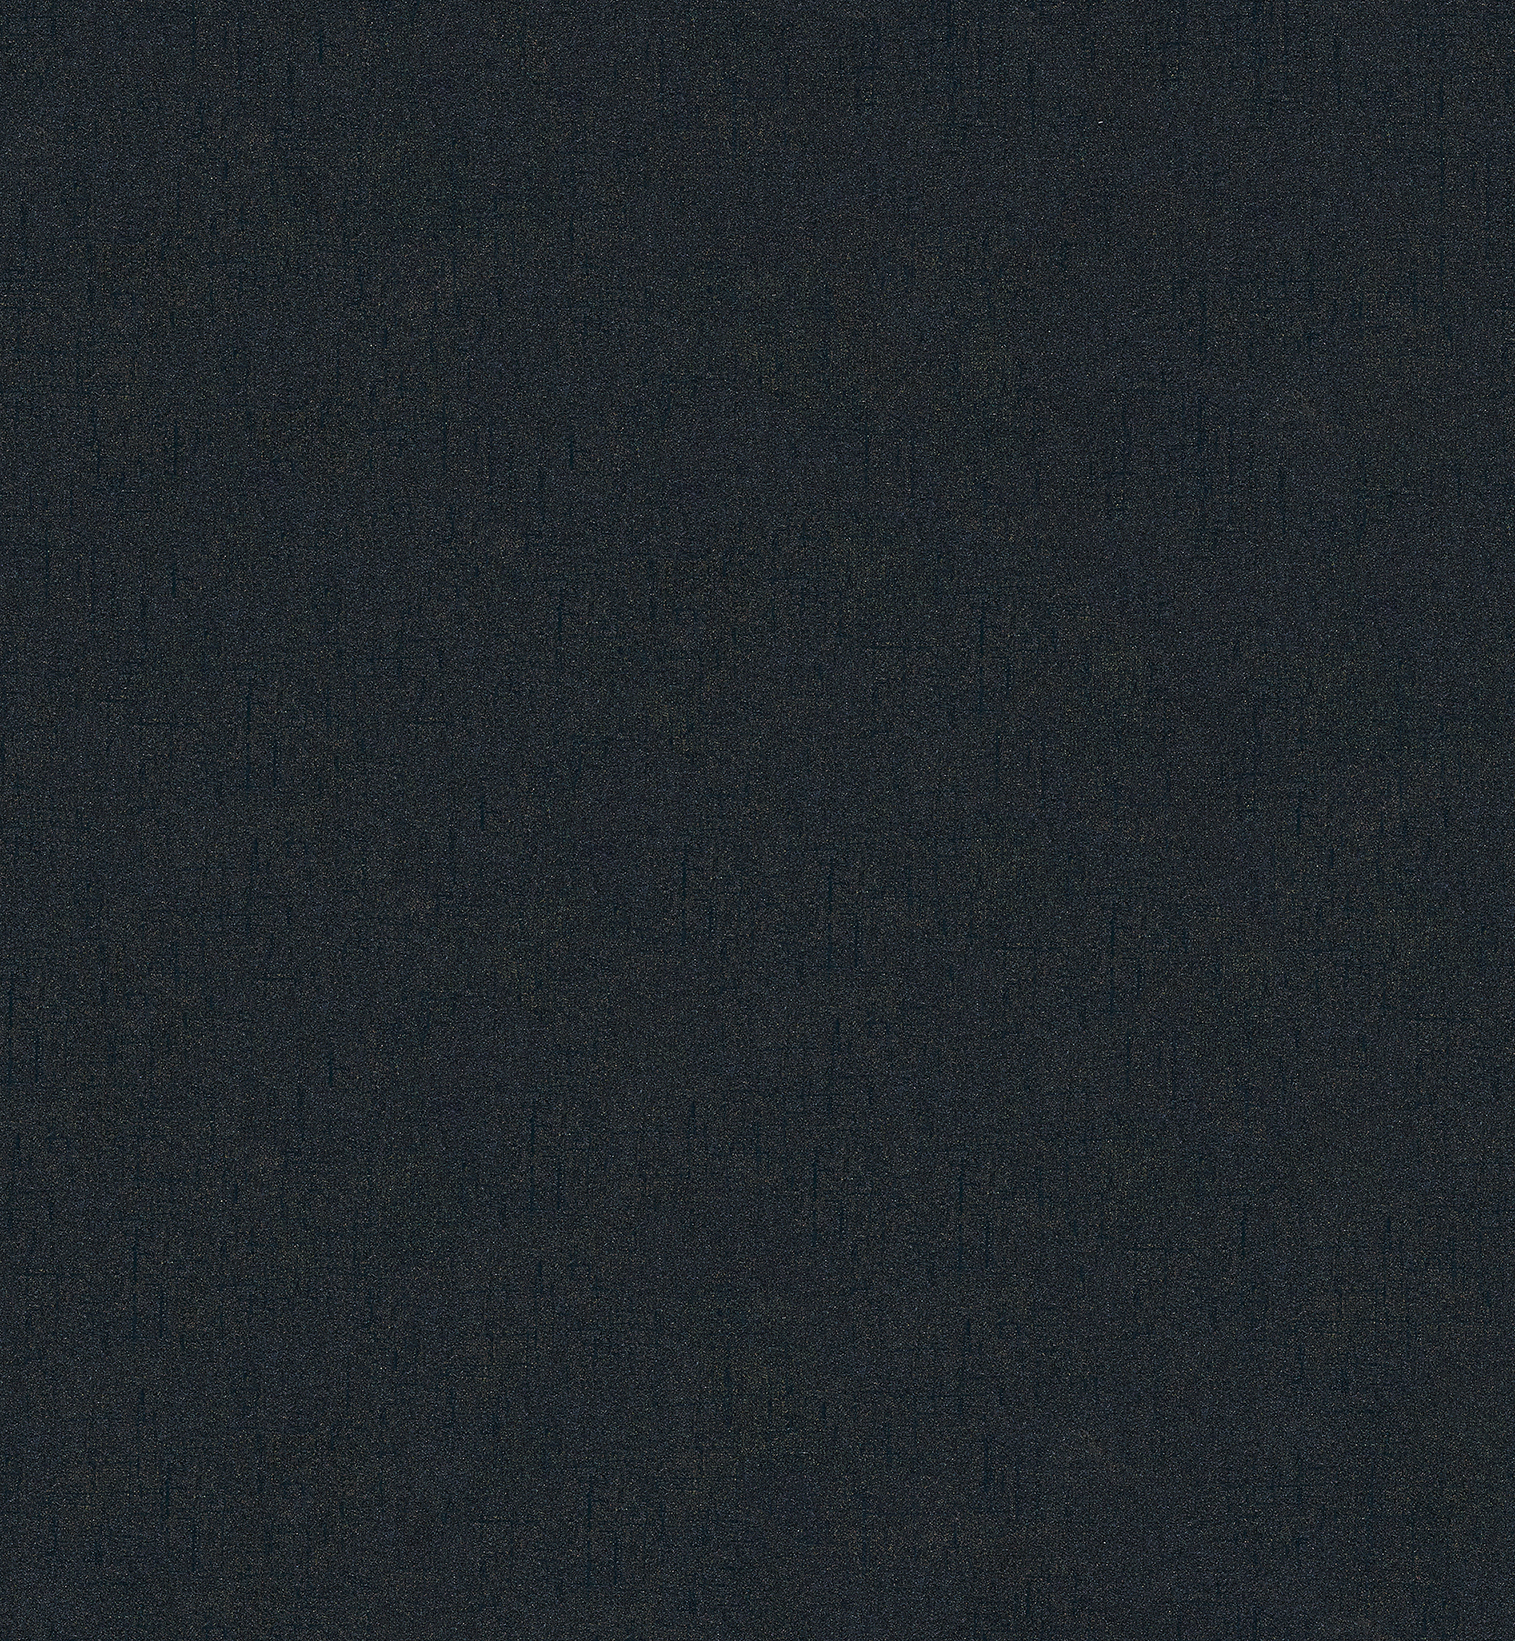 艾尔兰无缝墙布壁布_s1403-4_现代简约不规则纹斜竖条纹蓝黑色非墙纸